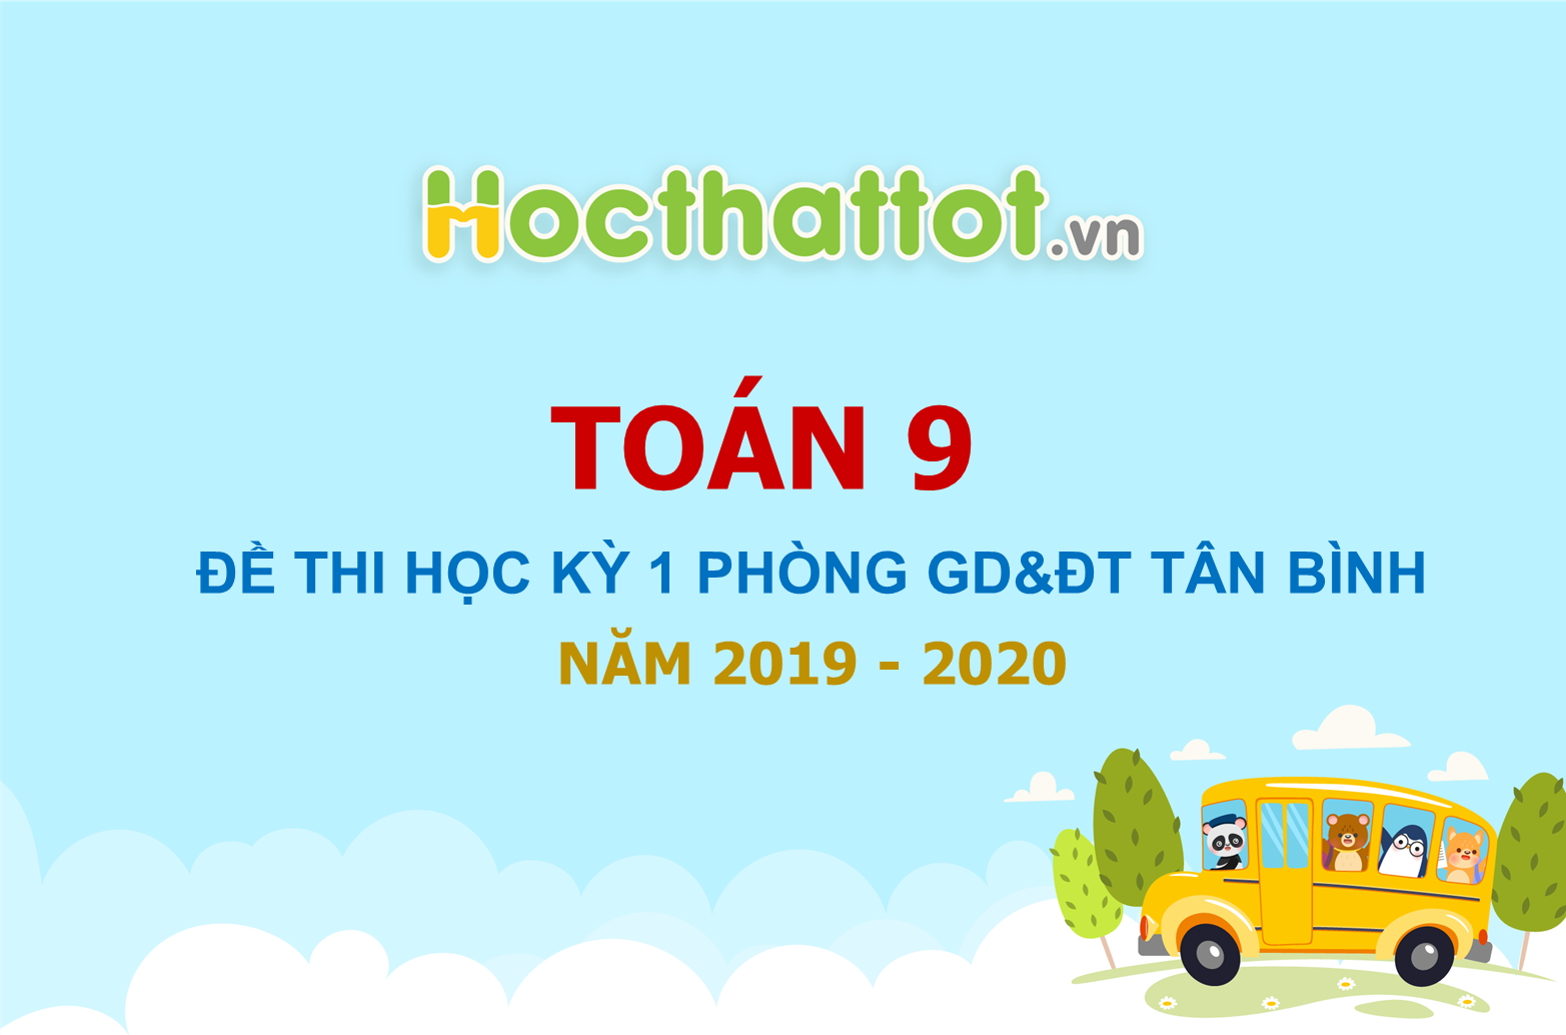 de-thi-hoc-ky-1-toan-9-nam-2019-2020-phong-gddt-tan-binh-tp-hcm